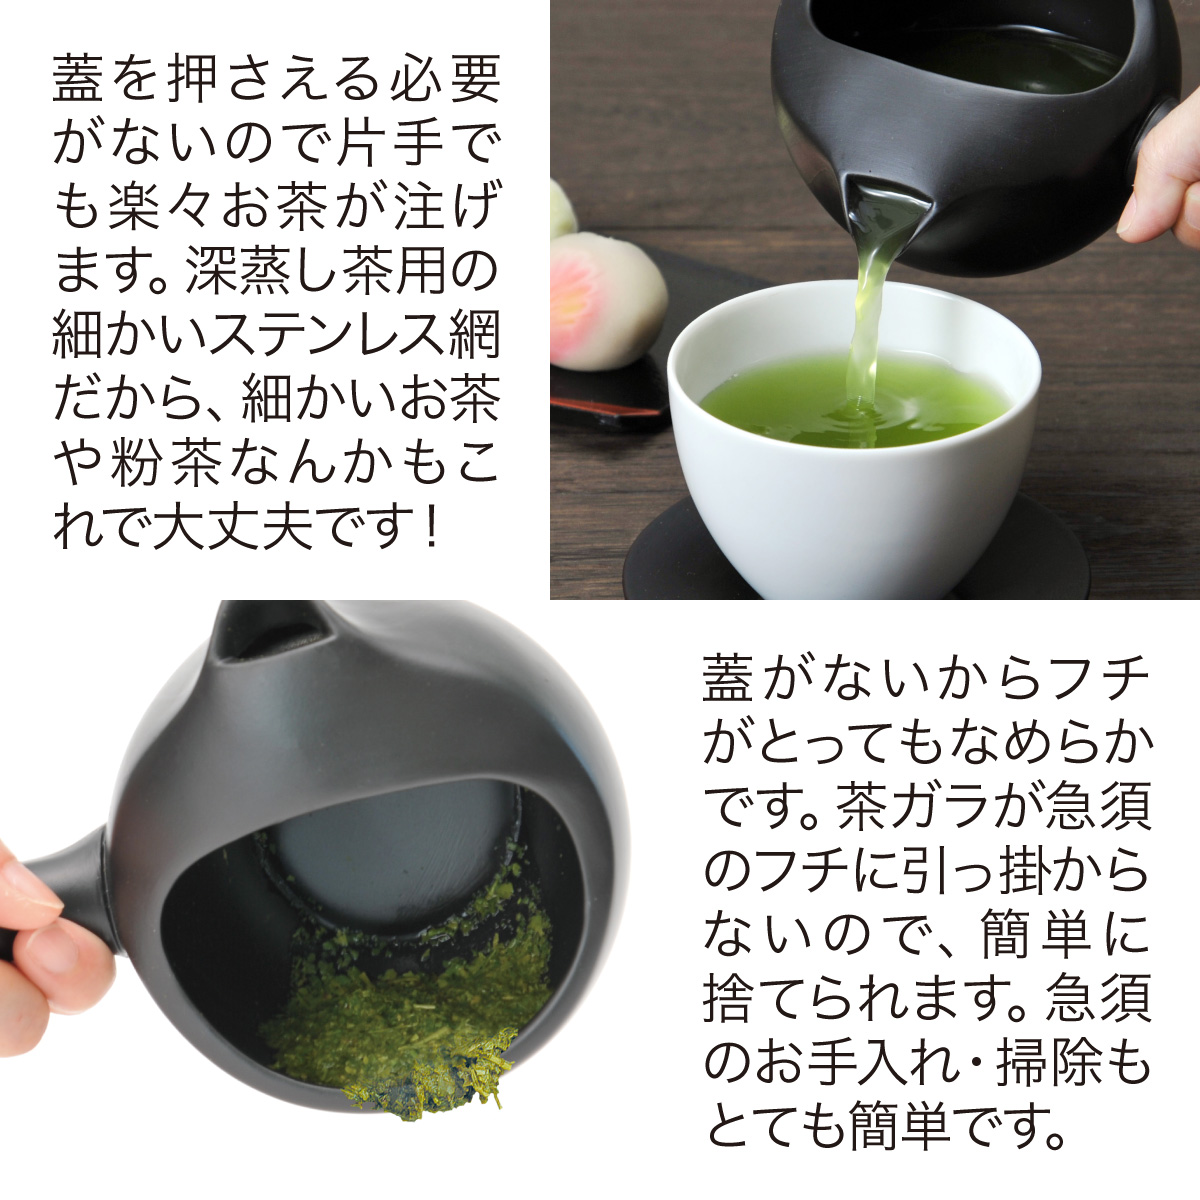 静岡茶/掛川茶 あきは茶園 / 深蒸し茶スタートセット